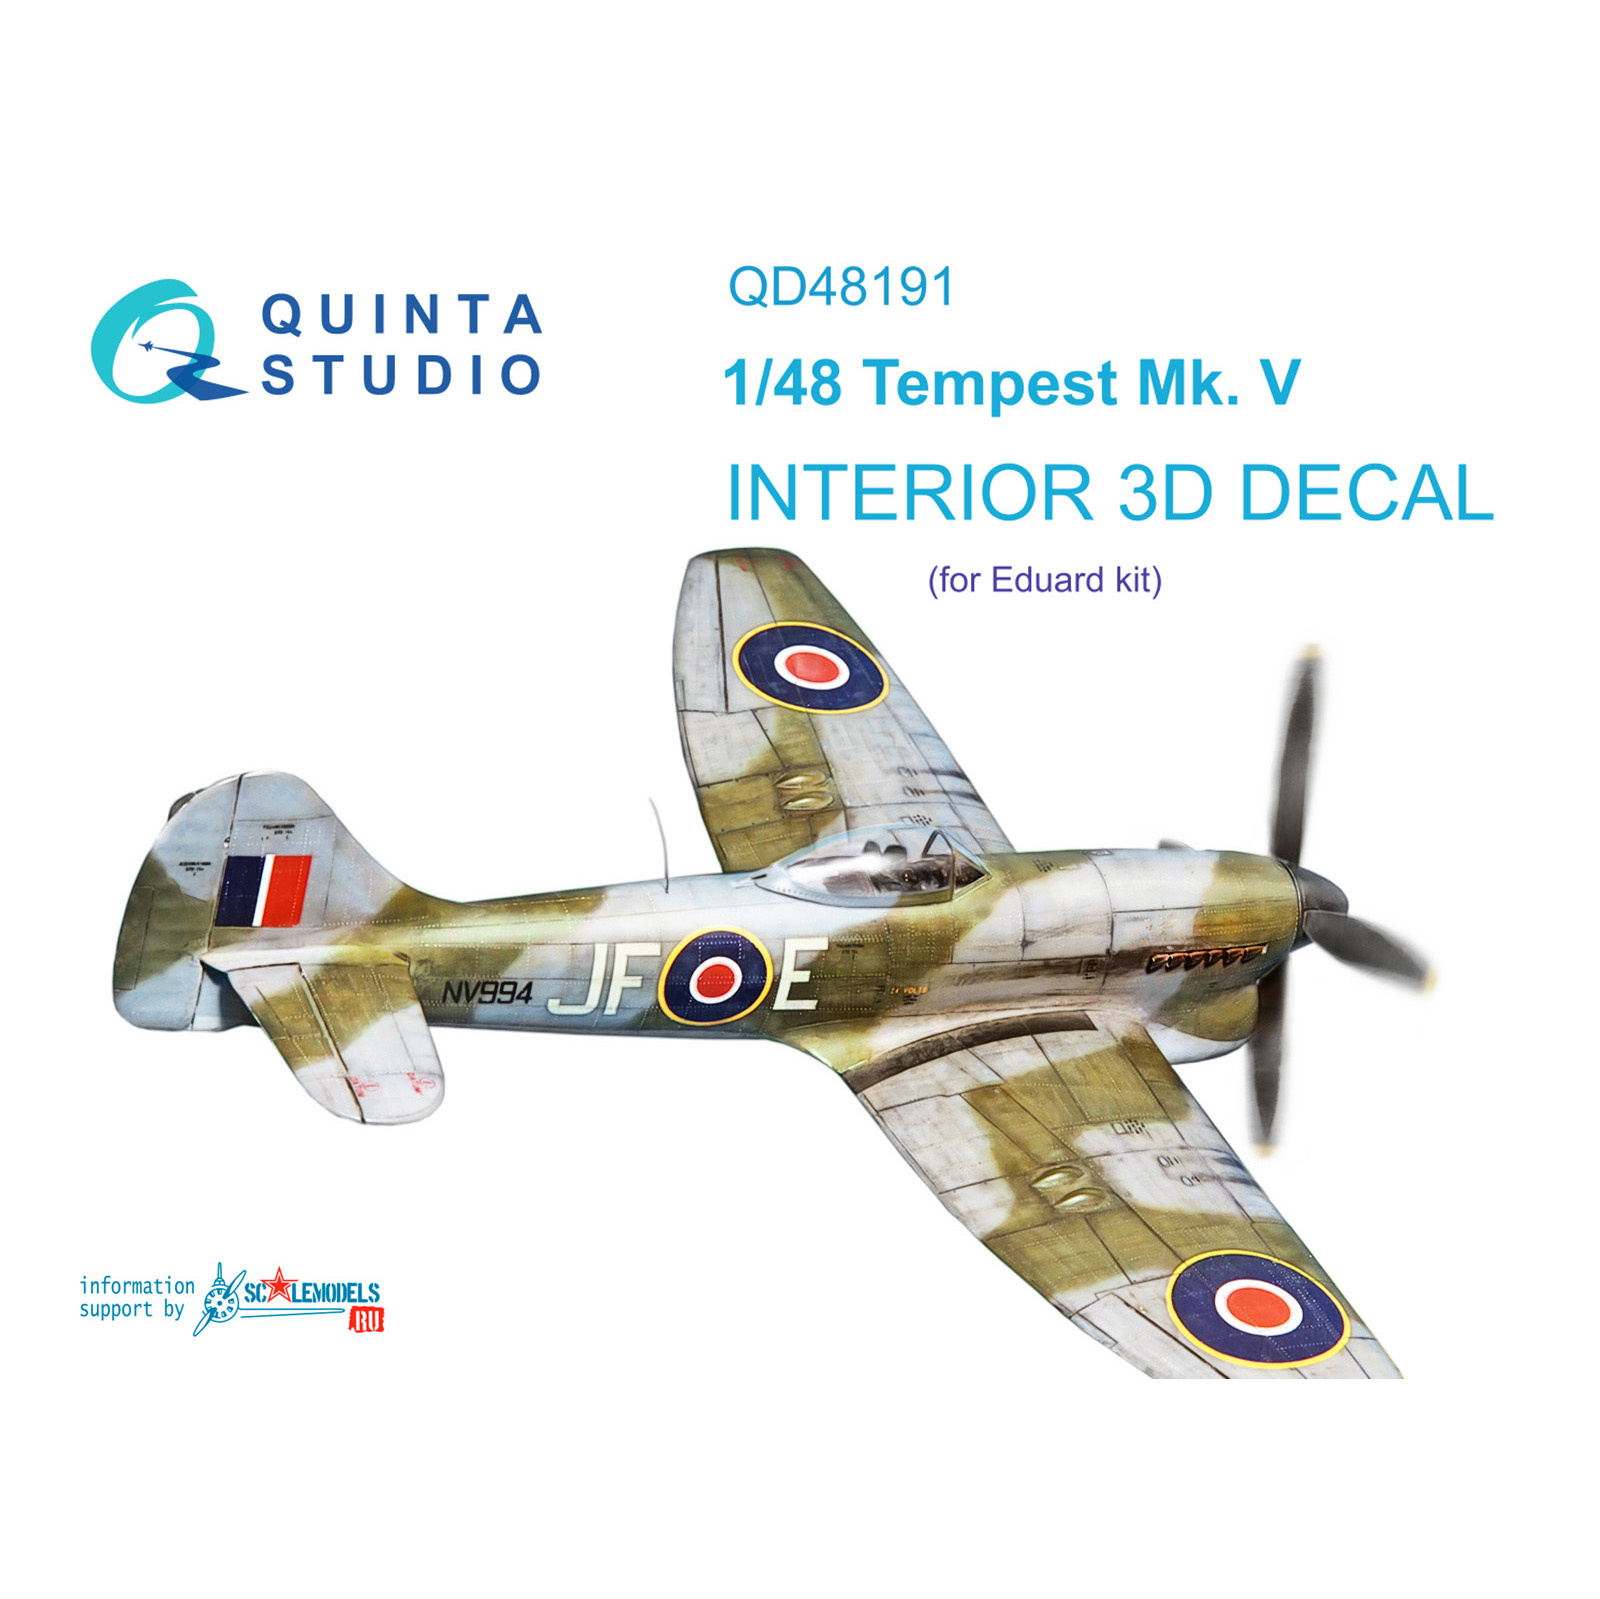 QD48191 Quinta Studio 1/48 3D Декаль интерьера кабины Tempest Mk.V (Eduard)